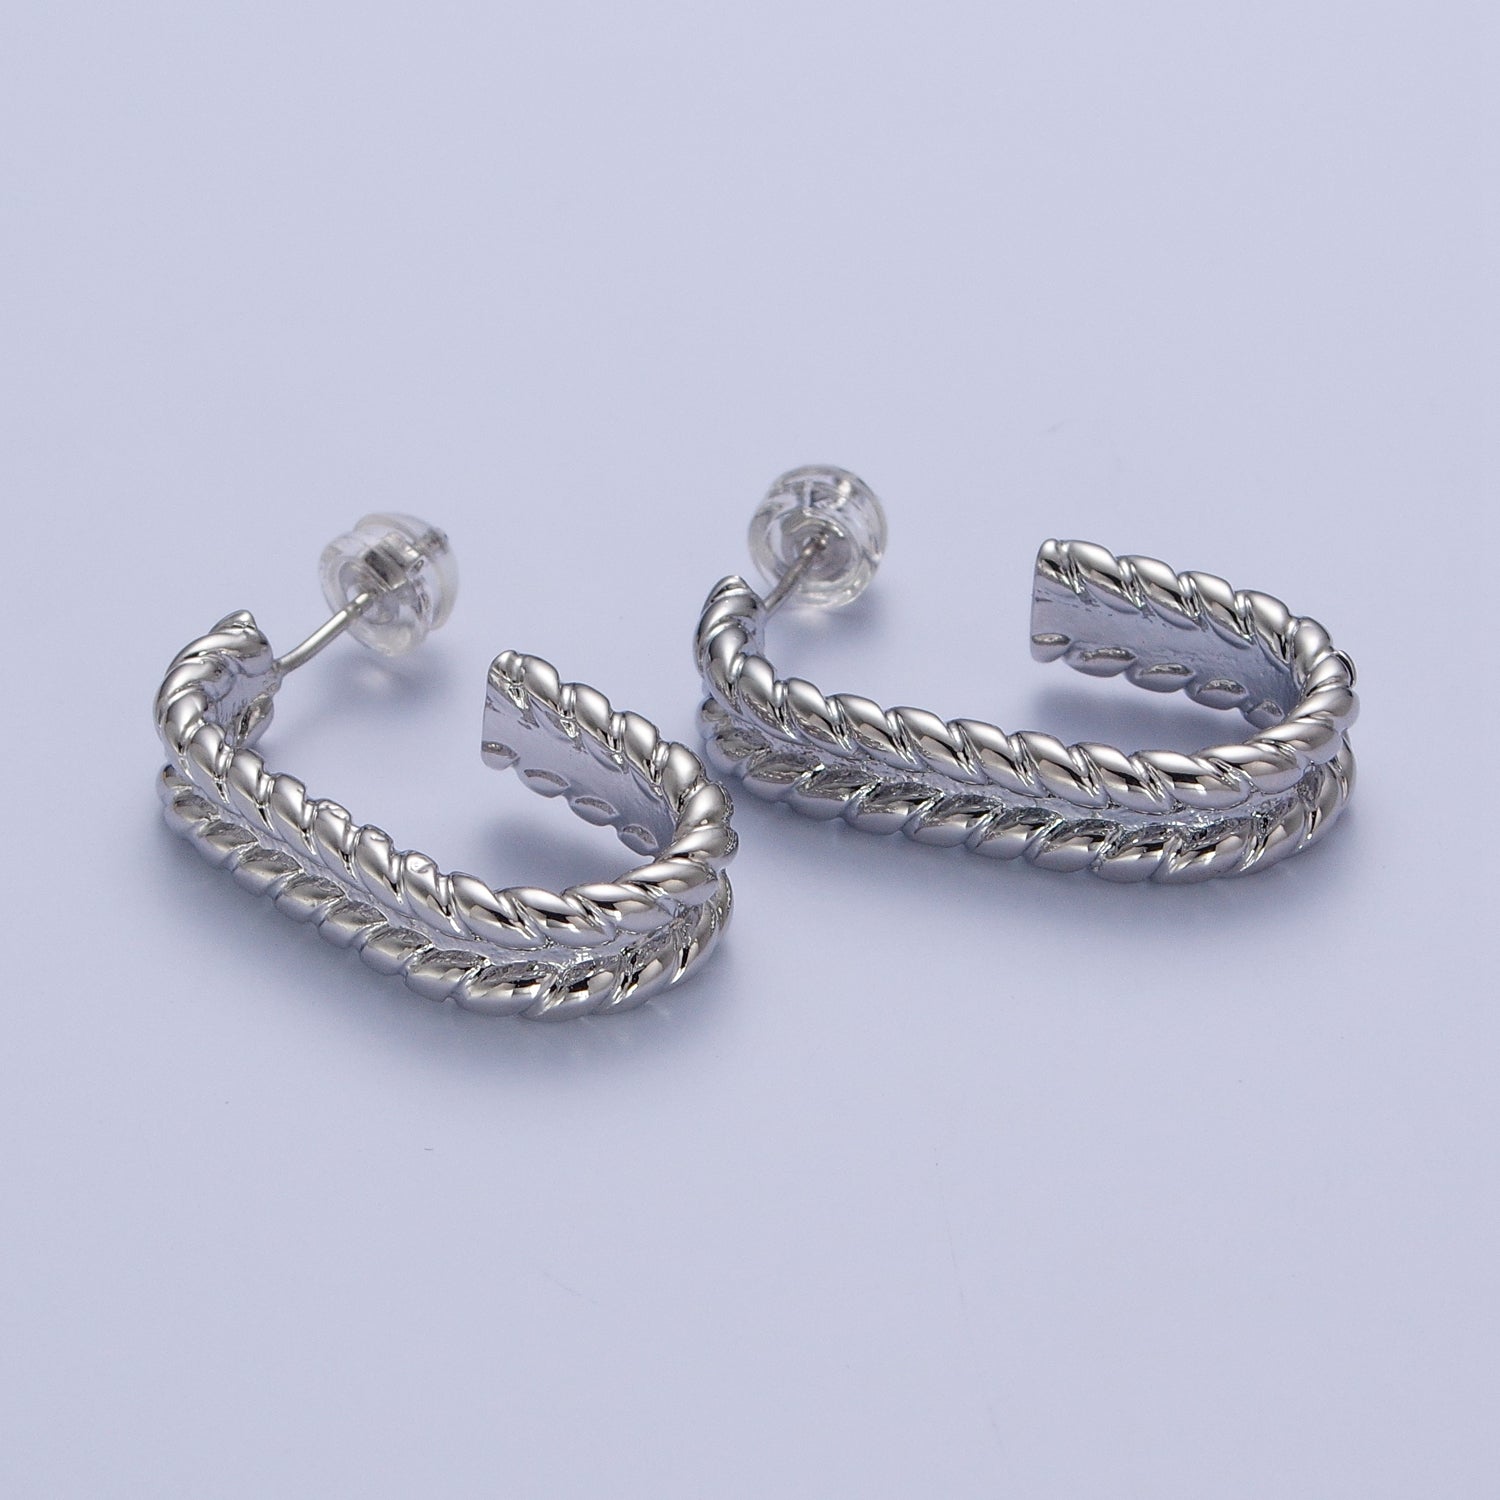 Wide Braided Twist Wheat J Shaped Hoop Stud Earrings in Gold & Silver | X876 X877 - DLUXCA